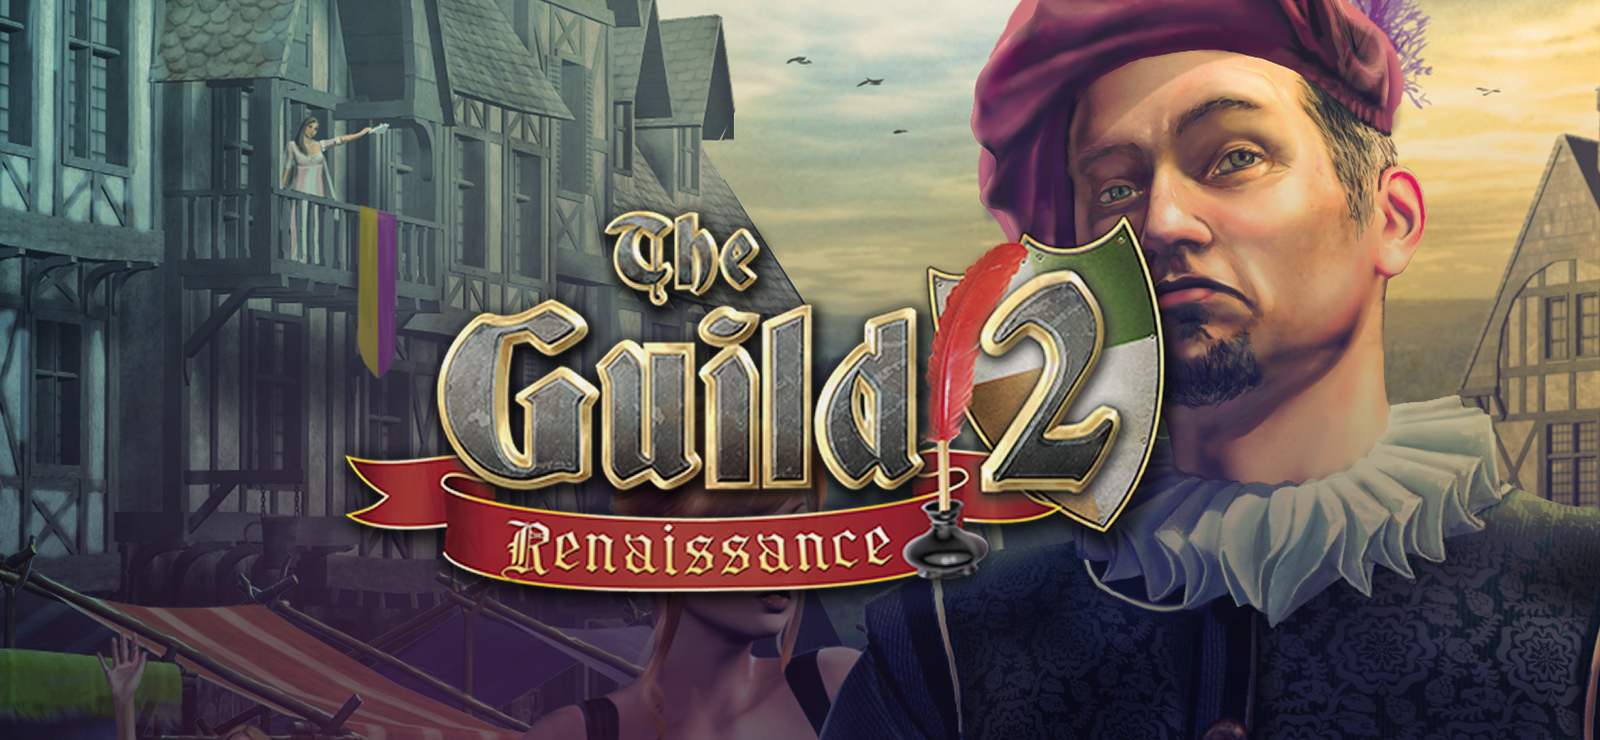 the guild 2 renaissance tips